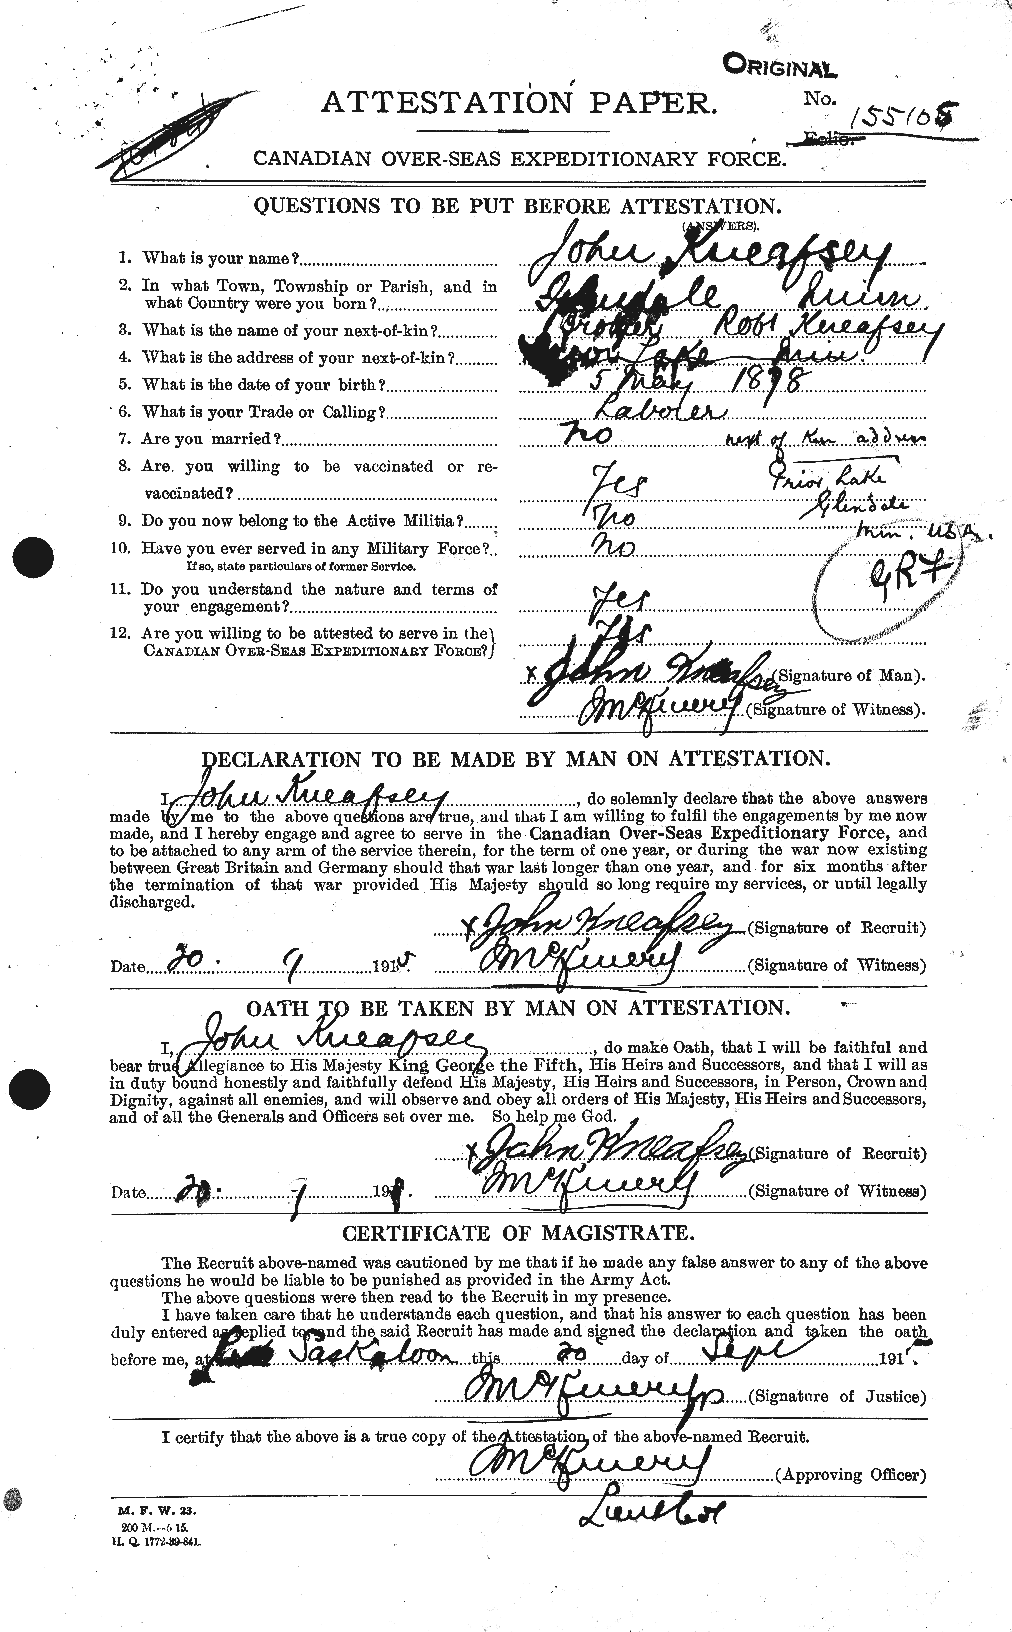 Dossiers du Personnel de la Première Guerre mondiale - CEC 435882a